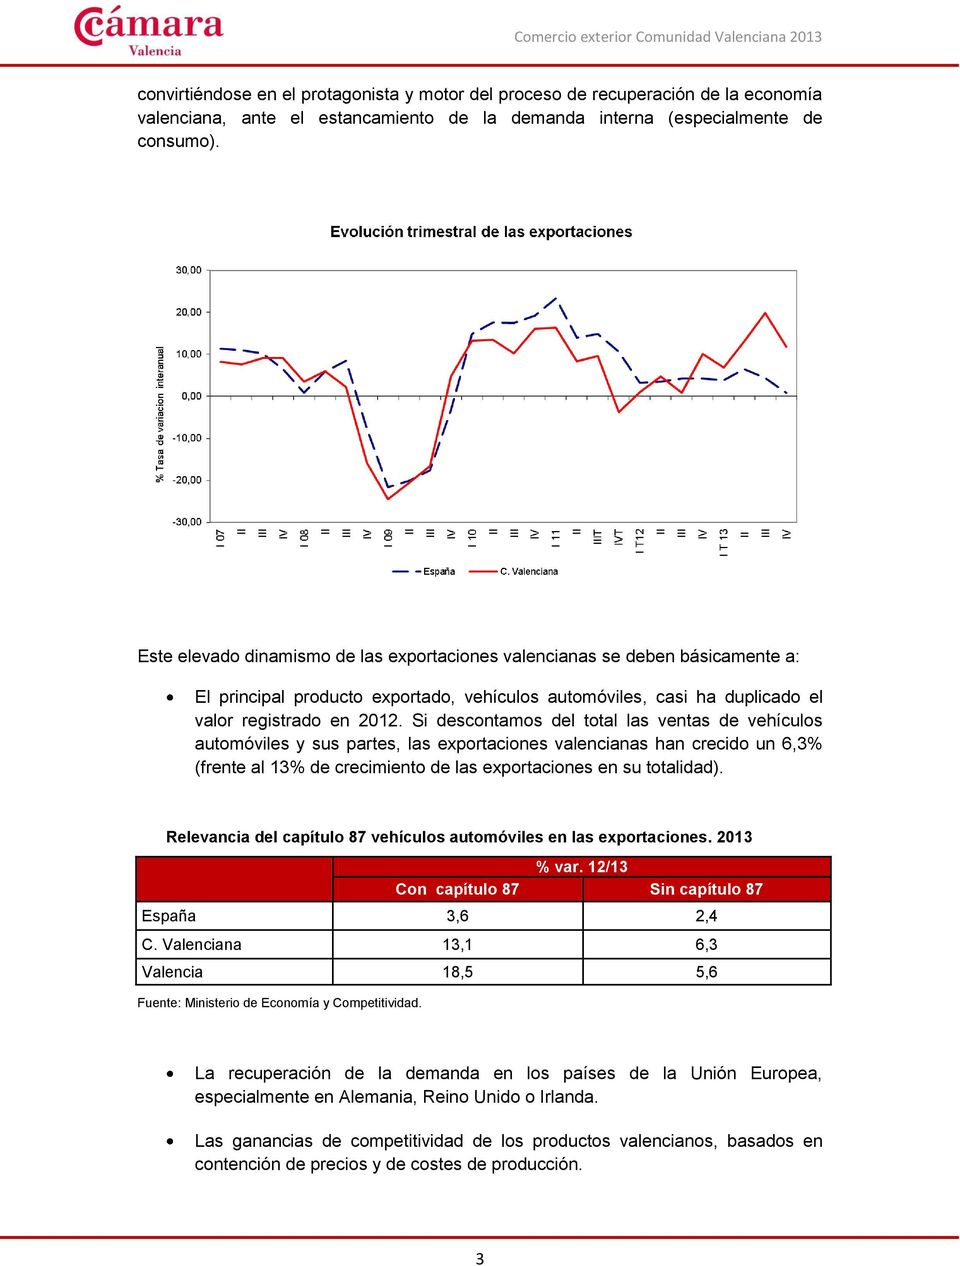 Si descontamos del total las ventas de vehículos automóviles y sus partes, las exportaciones valencianas han crecido un 6,3% (frente al 13% de crecimiento de las exportaciones en su totalidad).